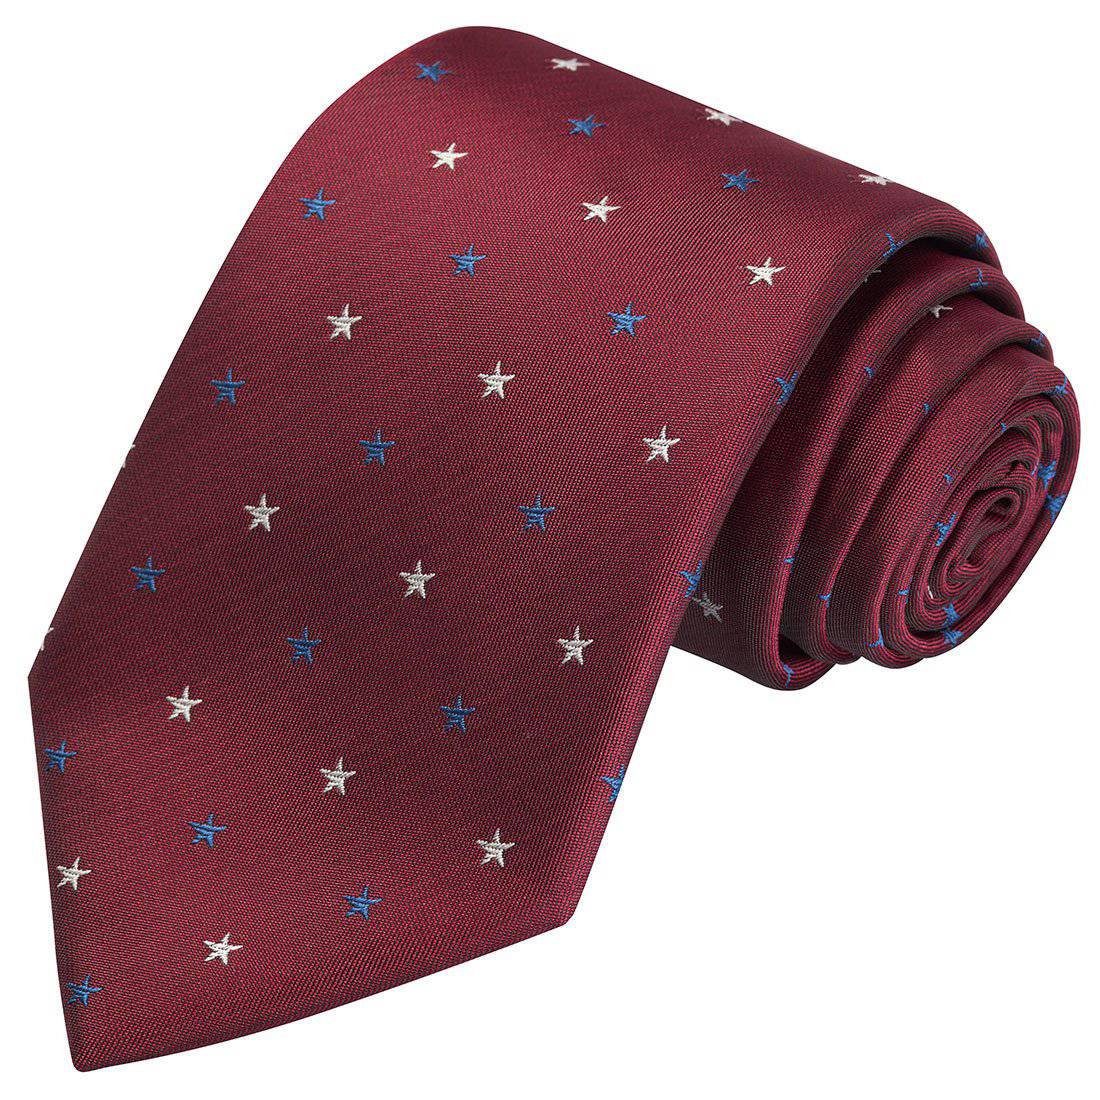 Patriot Mason Tie, standard and extra long - Tie, bowtie, pocket square  | Kissties